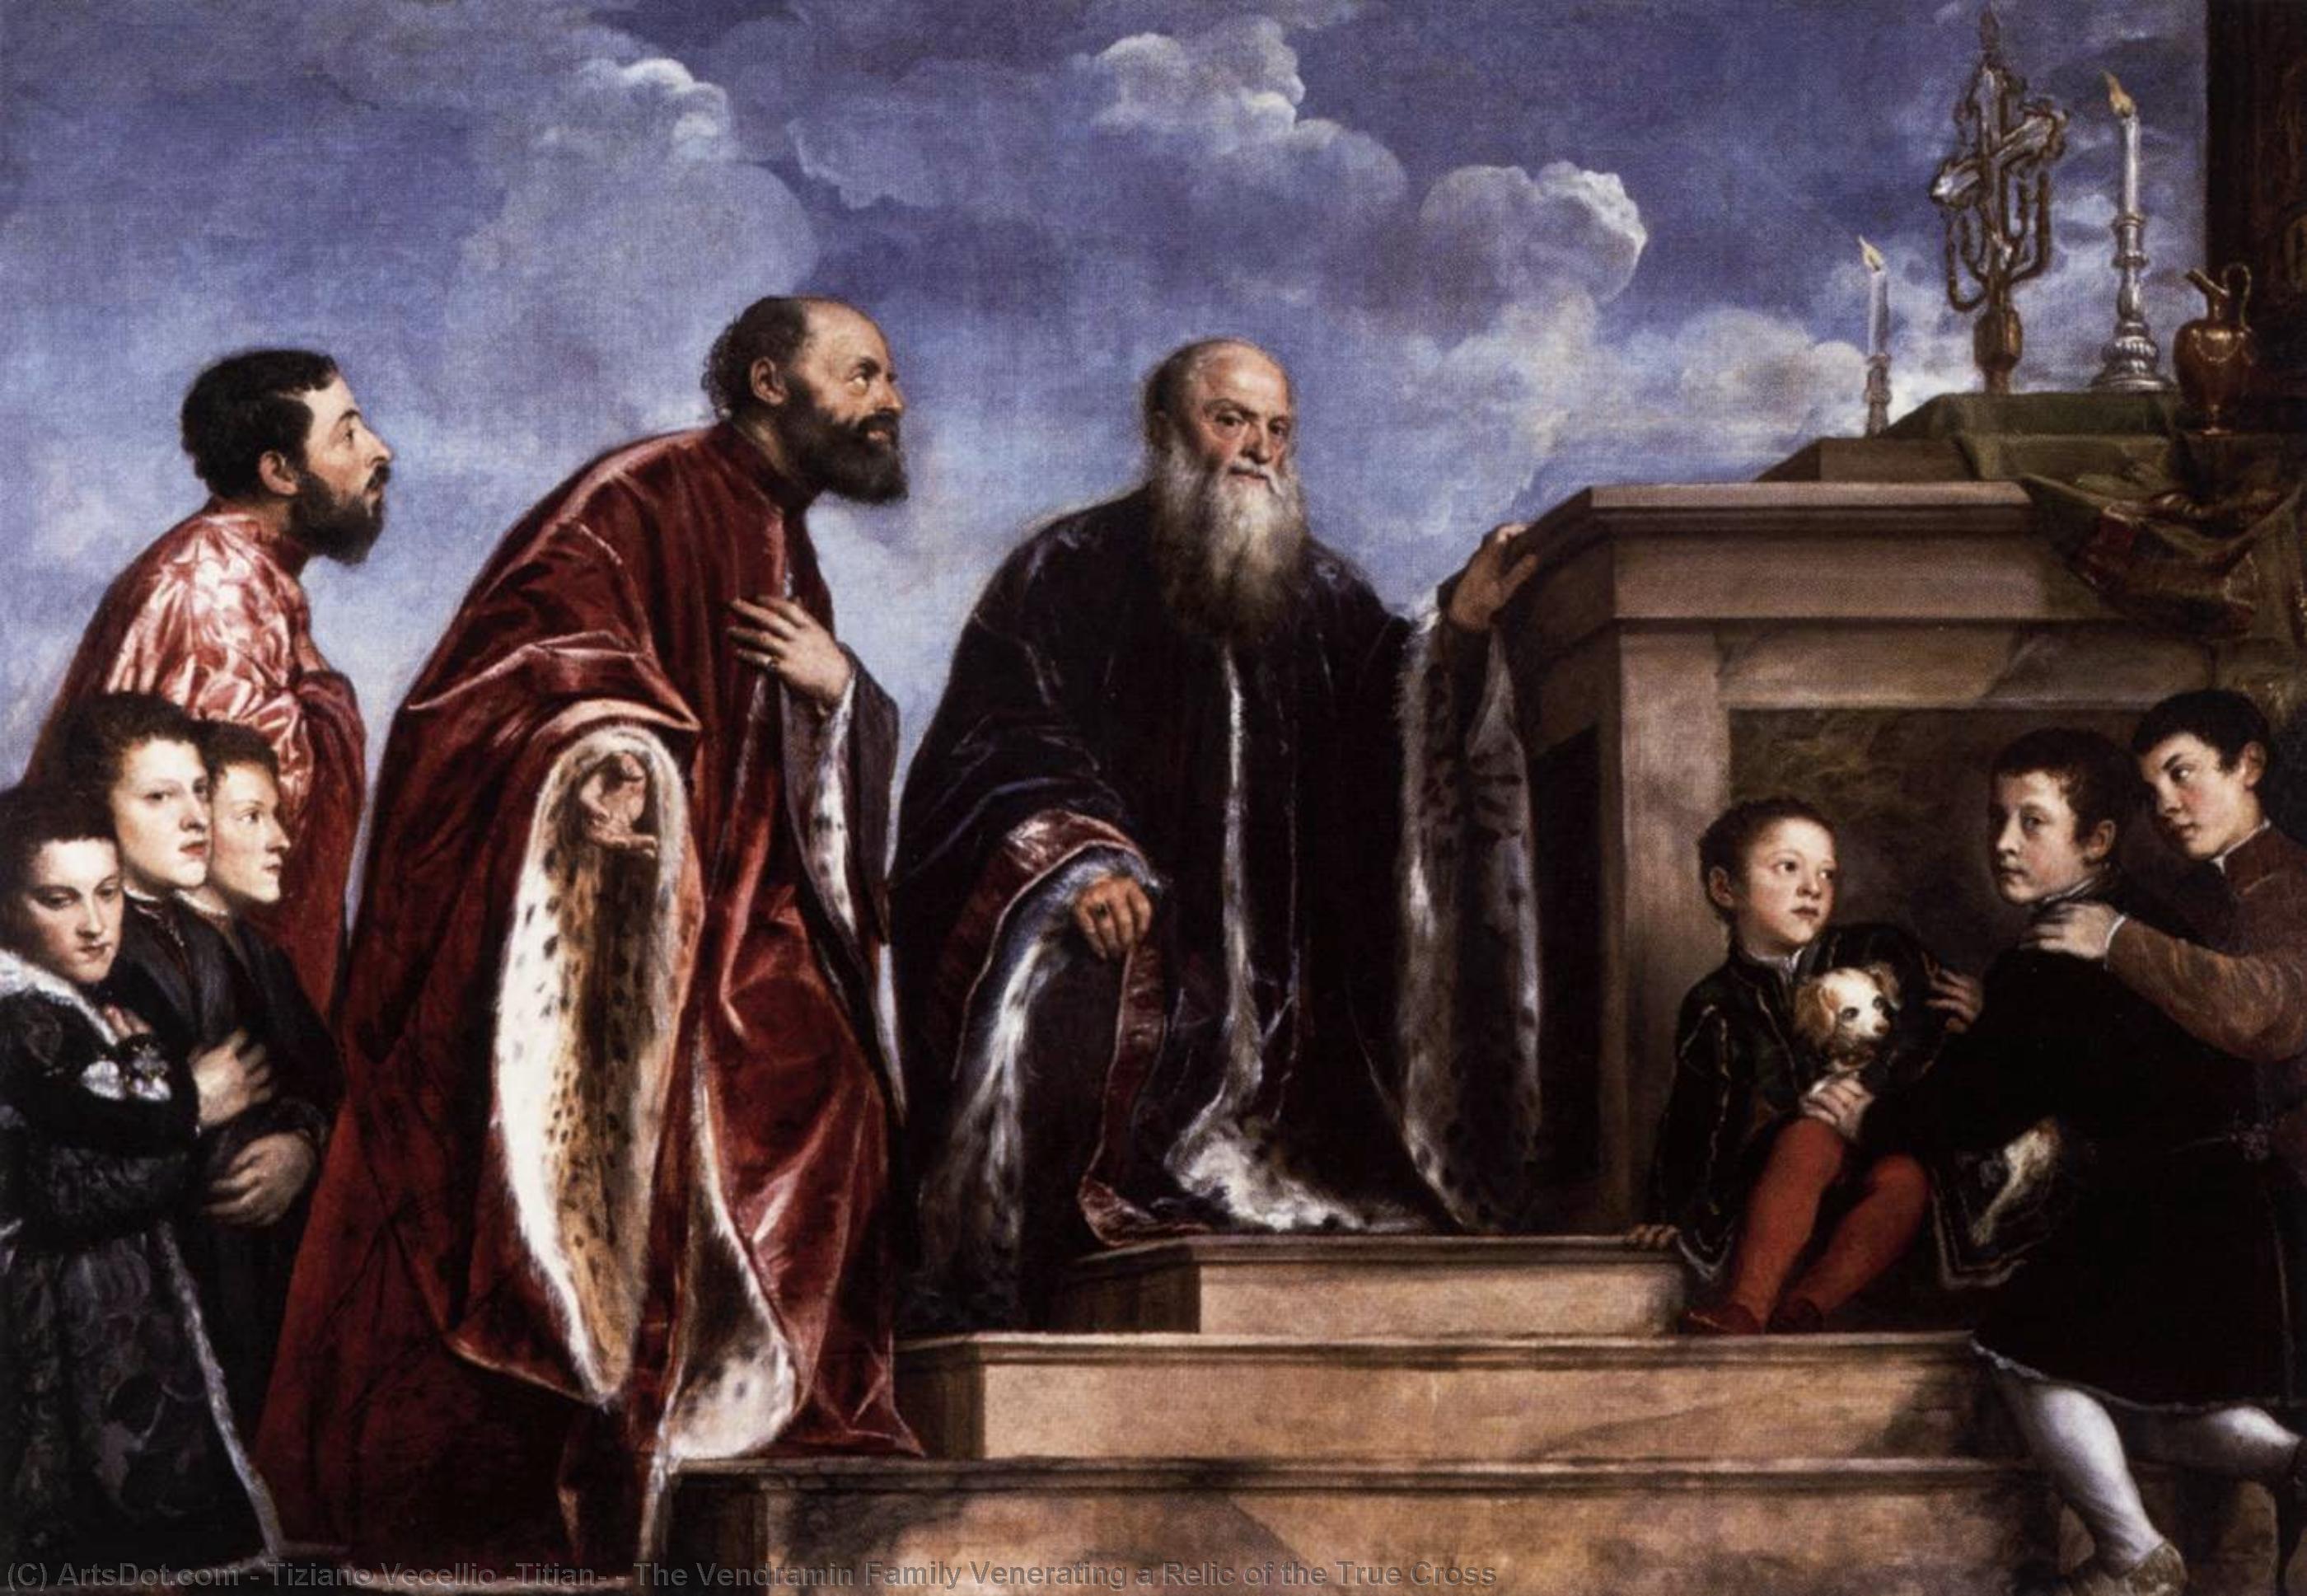 Wikioo.org – L'Encyclopédie des Beaux Arts - Peinture, Oeuvre de Tiziano Vecellio (Titian) - la famille vendramin vénérant une relique de la vraie croix